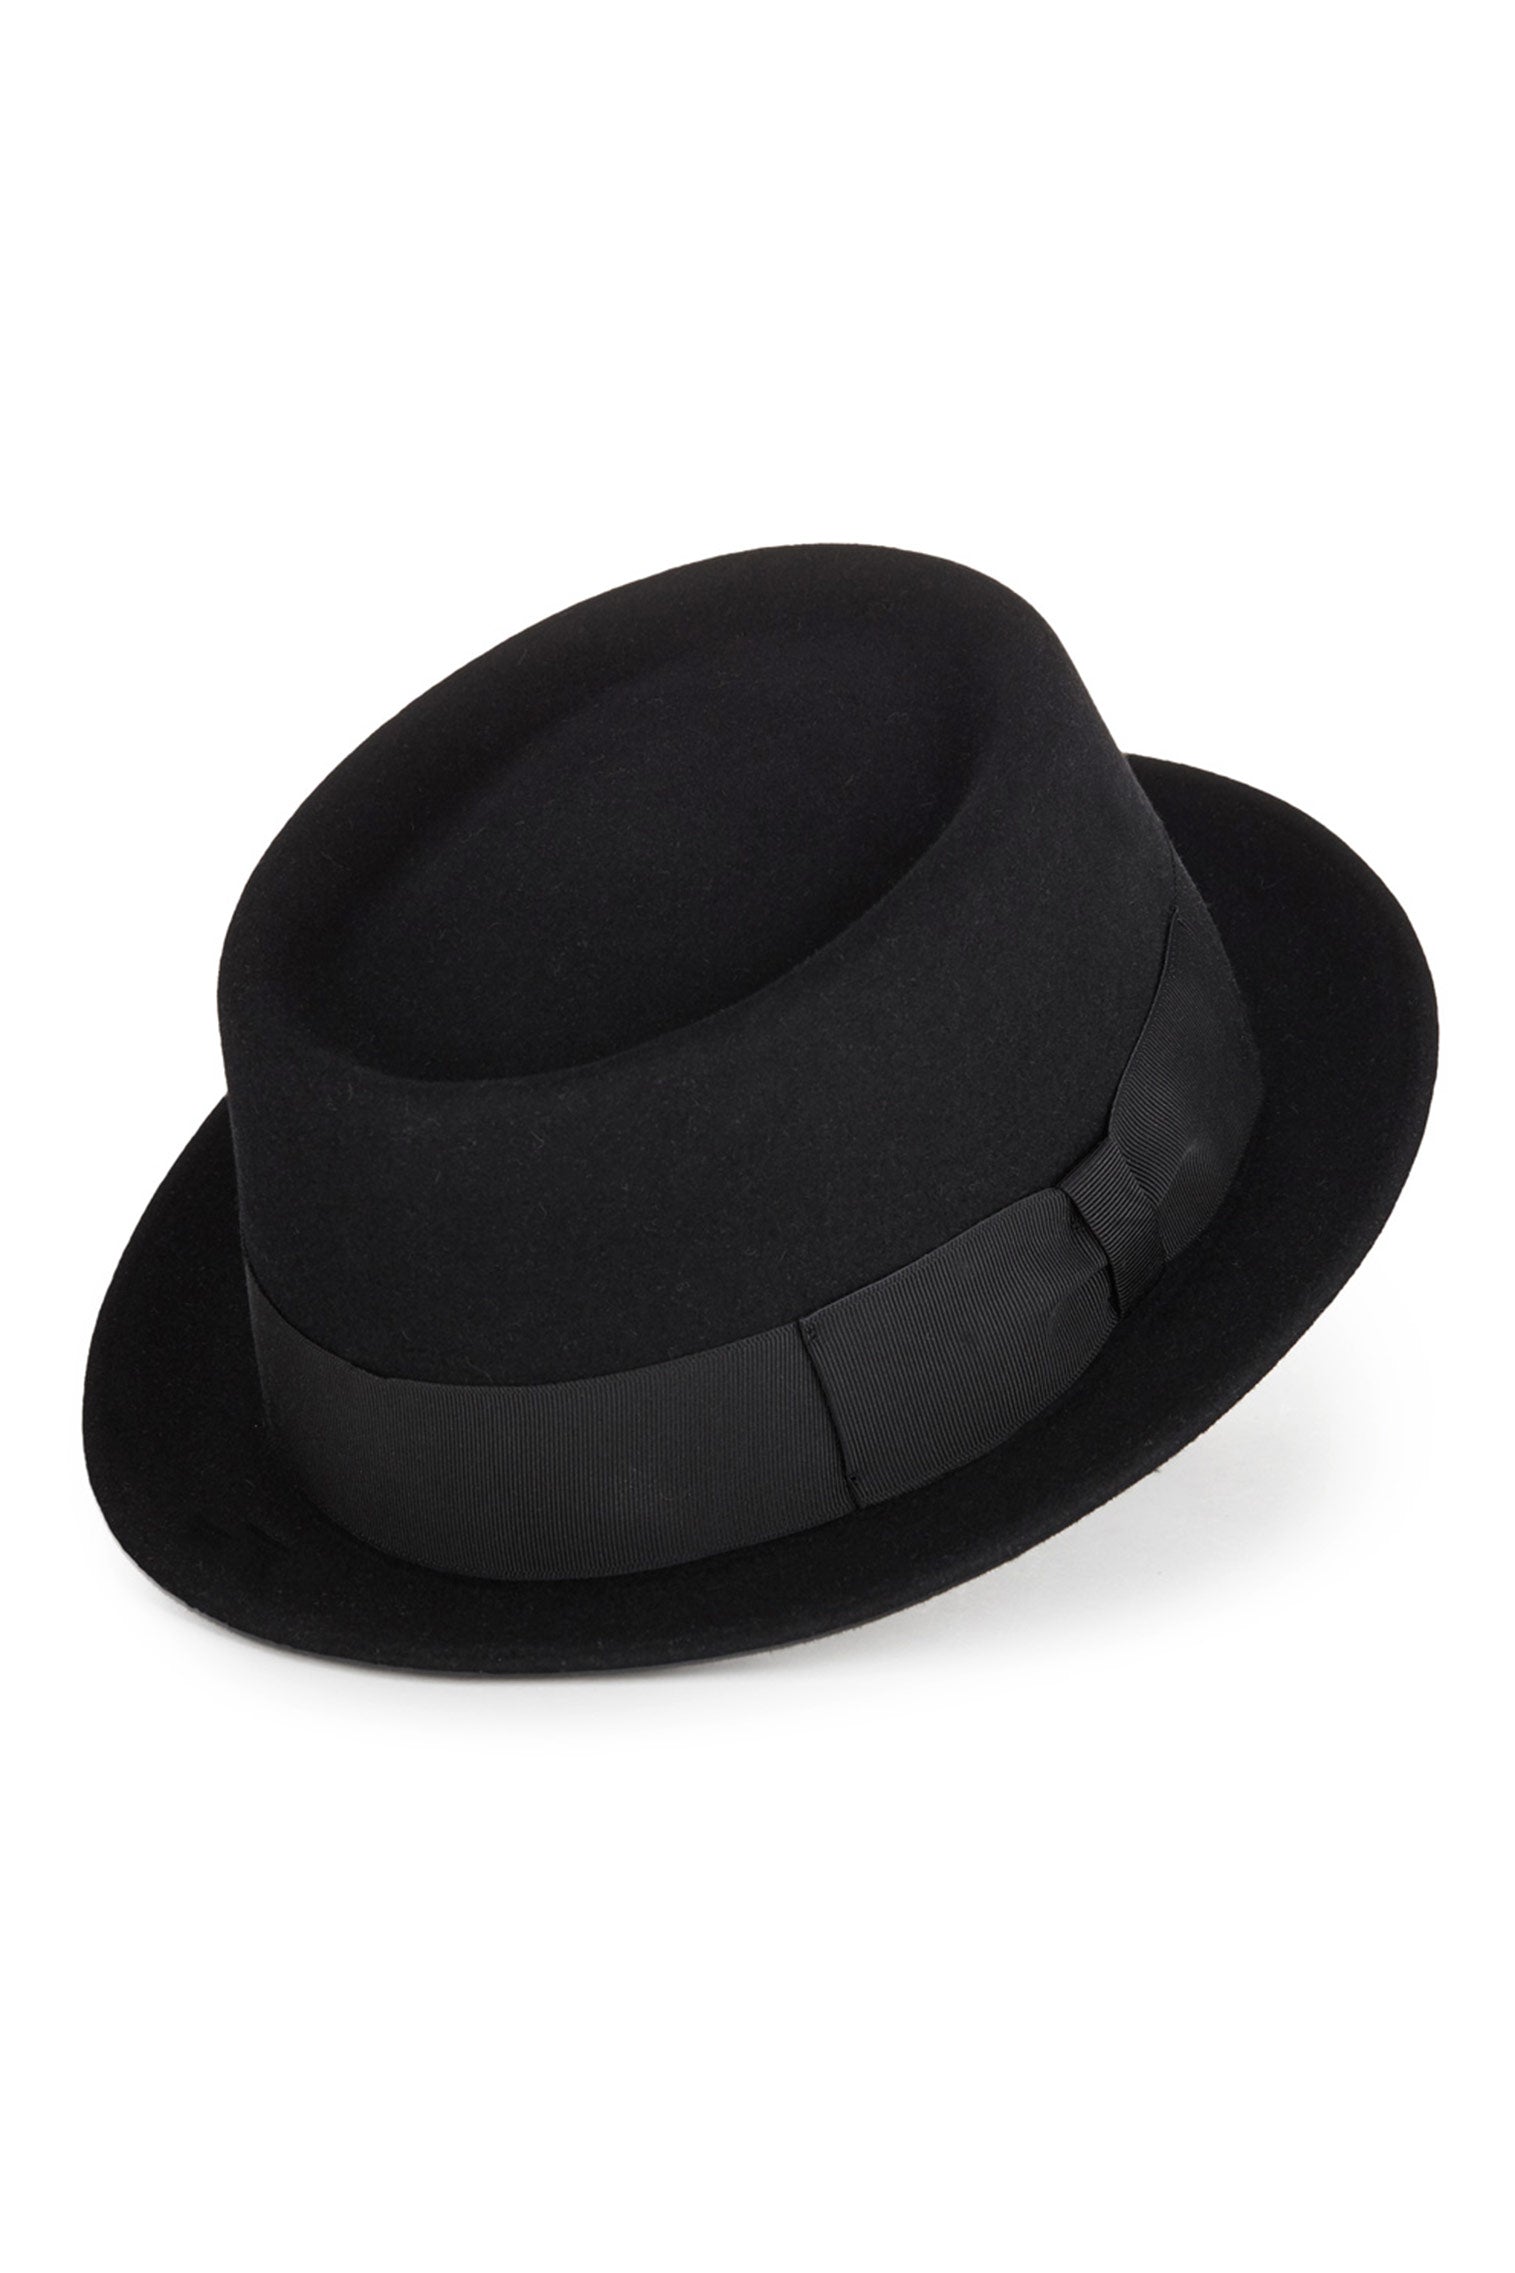 Sinatra Porkpie - Men's Hats - Lock & Co. Hatters London UK